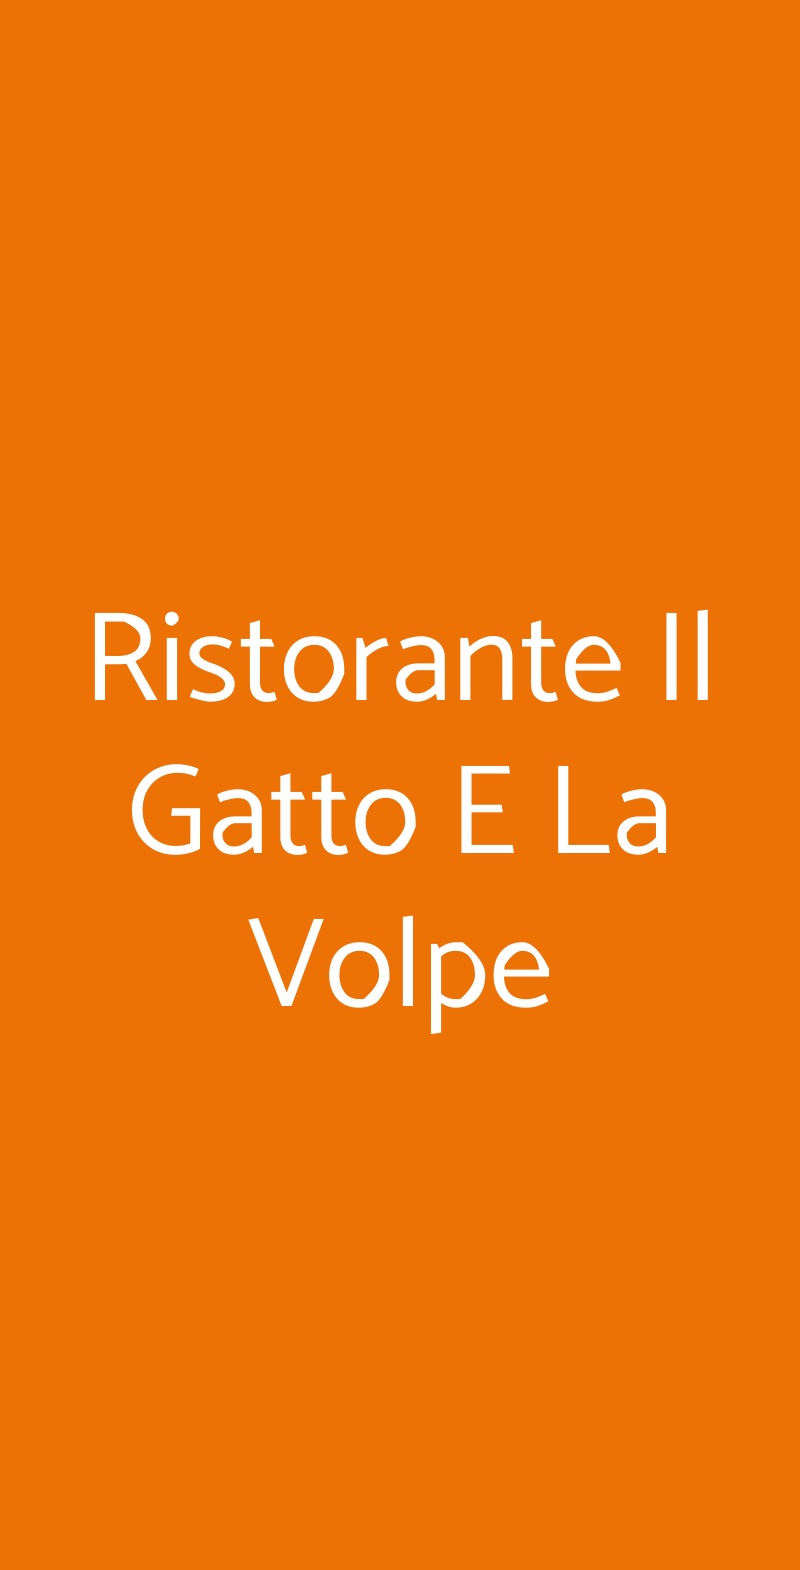 Ristorante Il Gatto E La Volpe Milano menù 1 pagina